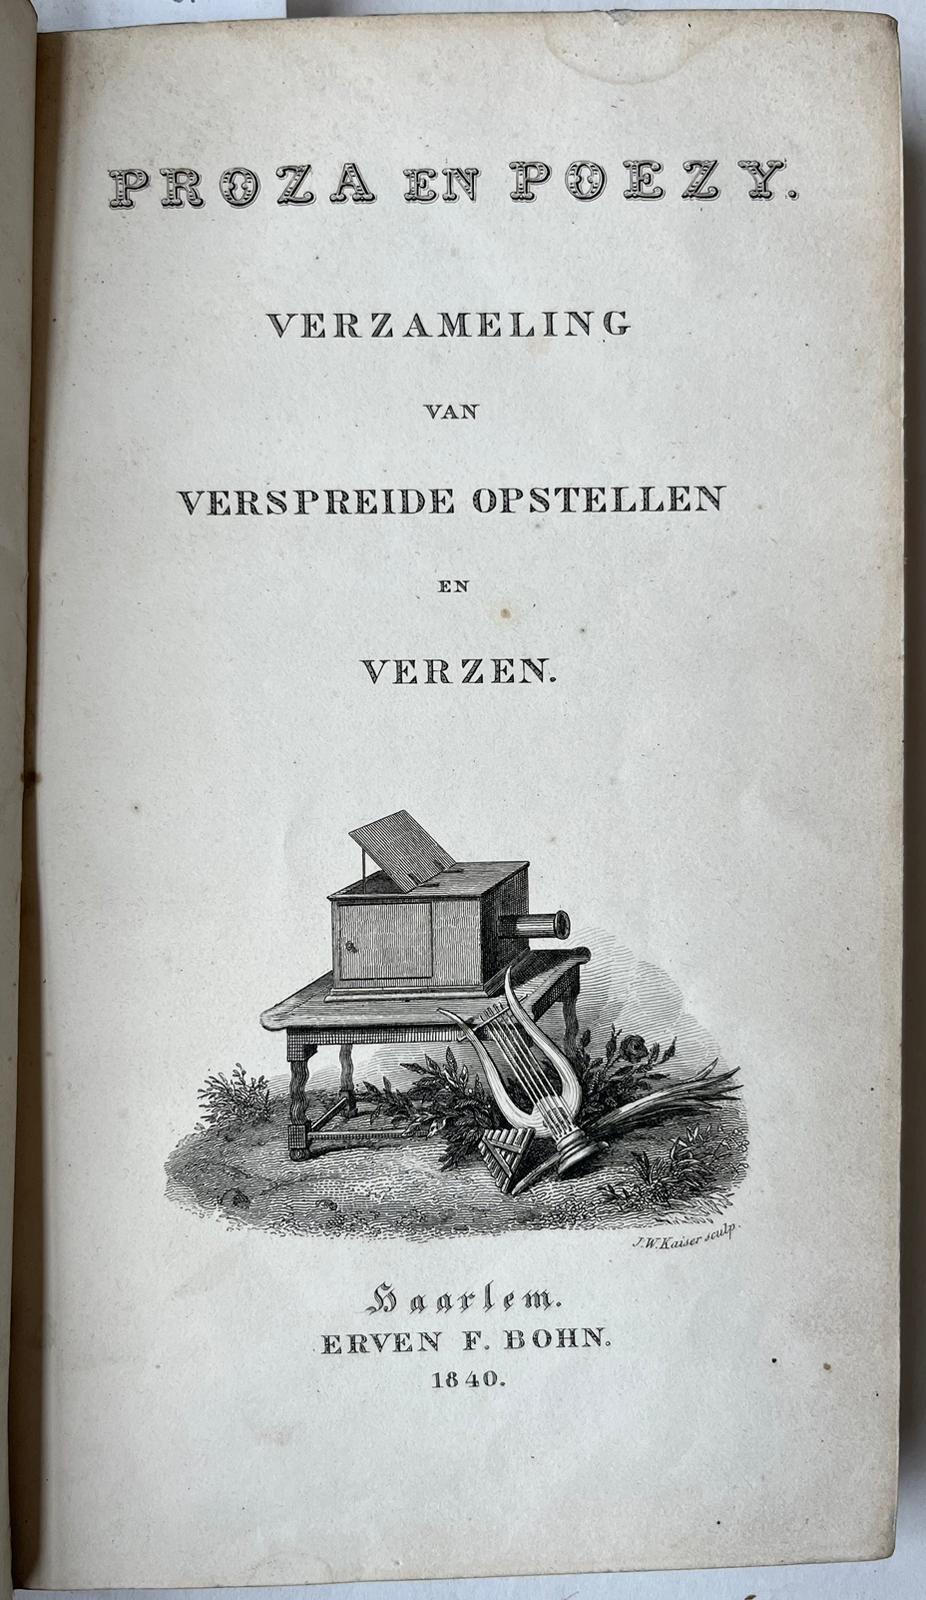 [Beets, Nicolaas] - [Literature 1840] Proza en poezy. Verzameling van verspreide opstellen en verzen. Haarlem, Erven F. Bohn, 1840, 170 pp.